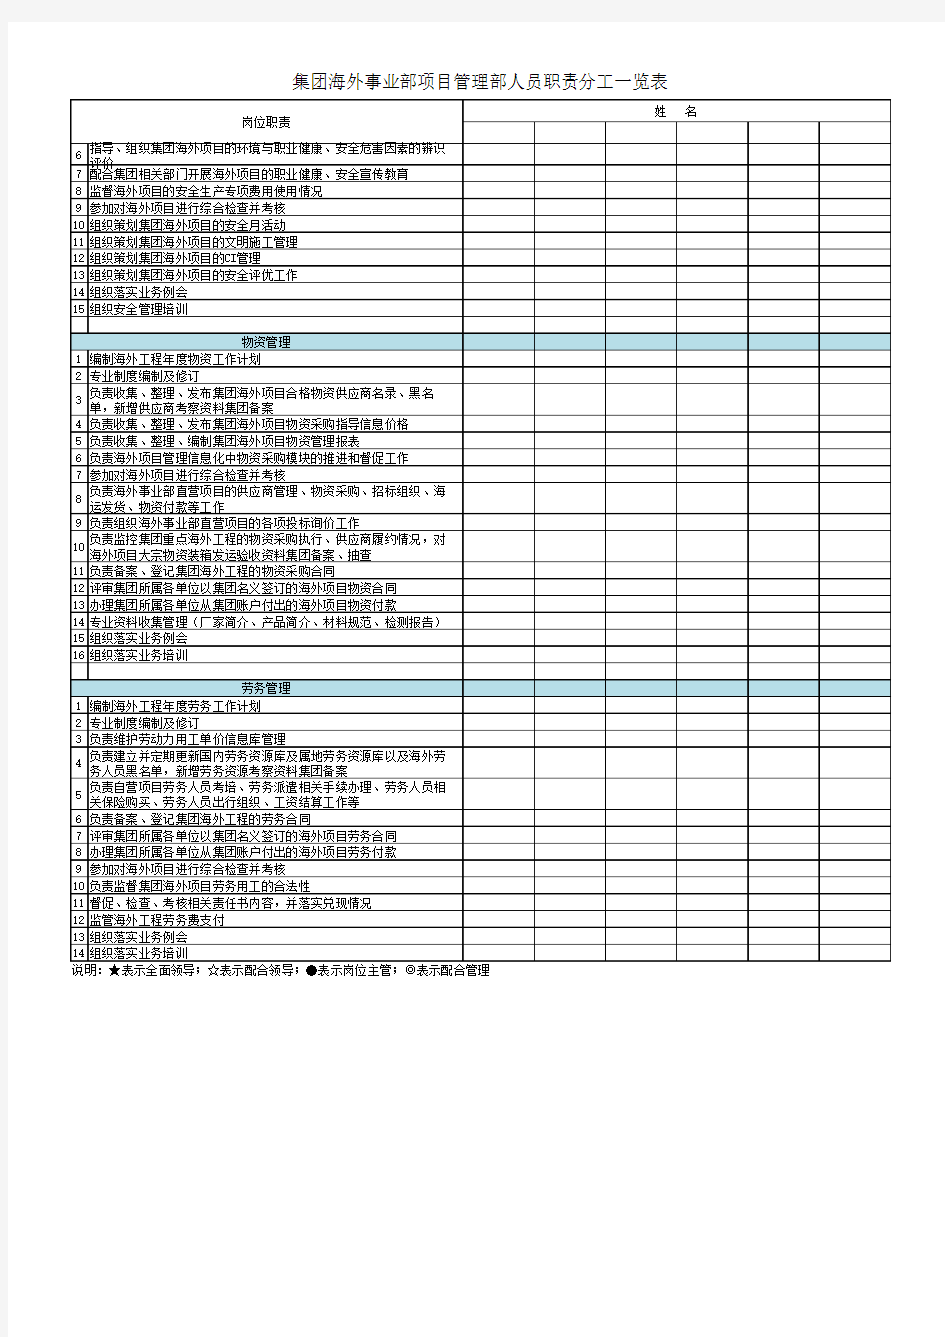 项目管理部人员职责分工一览表